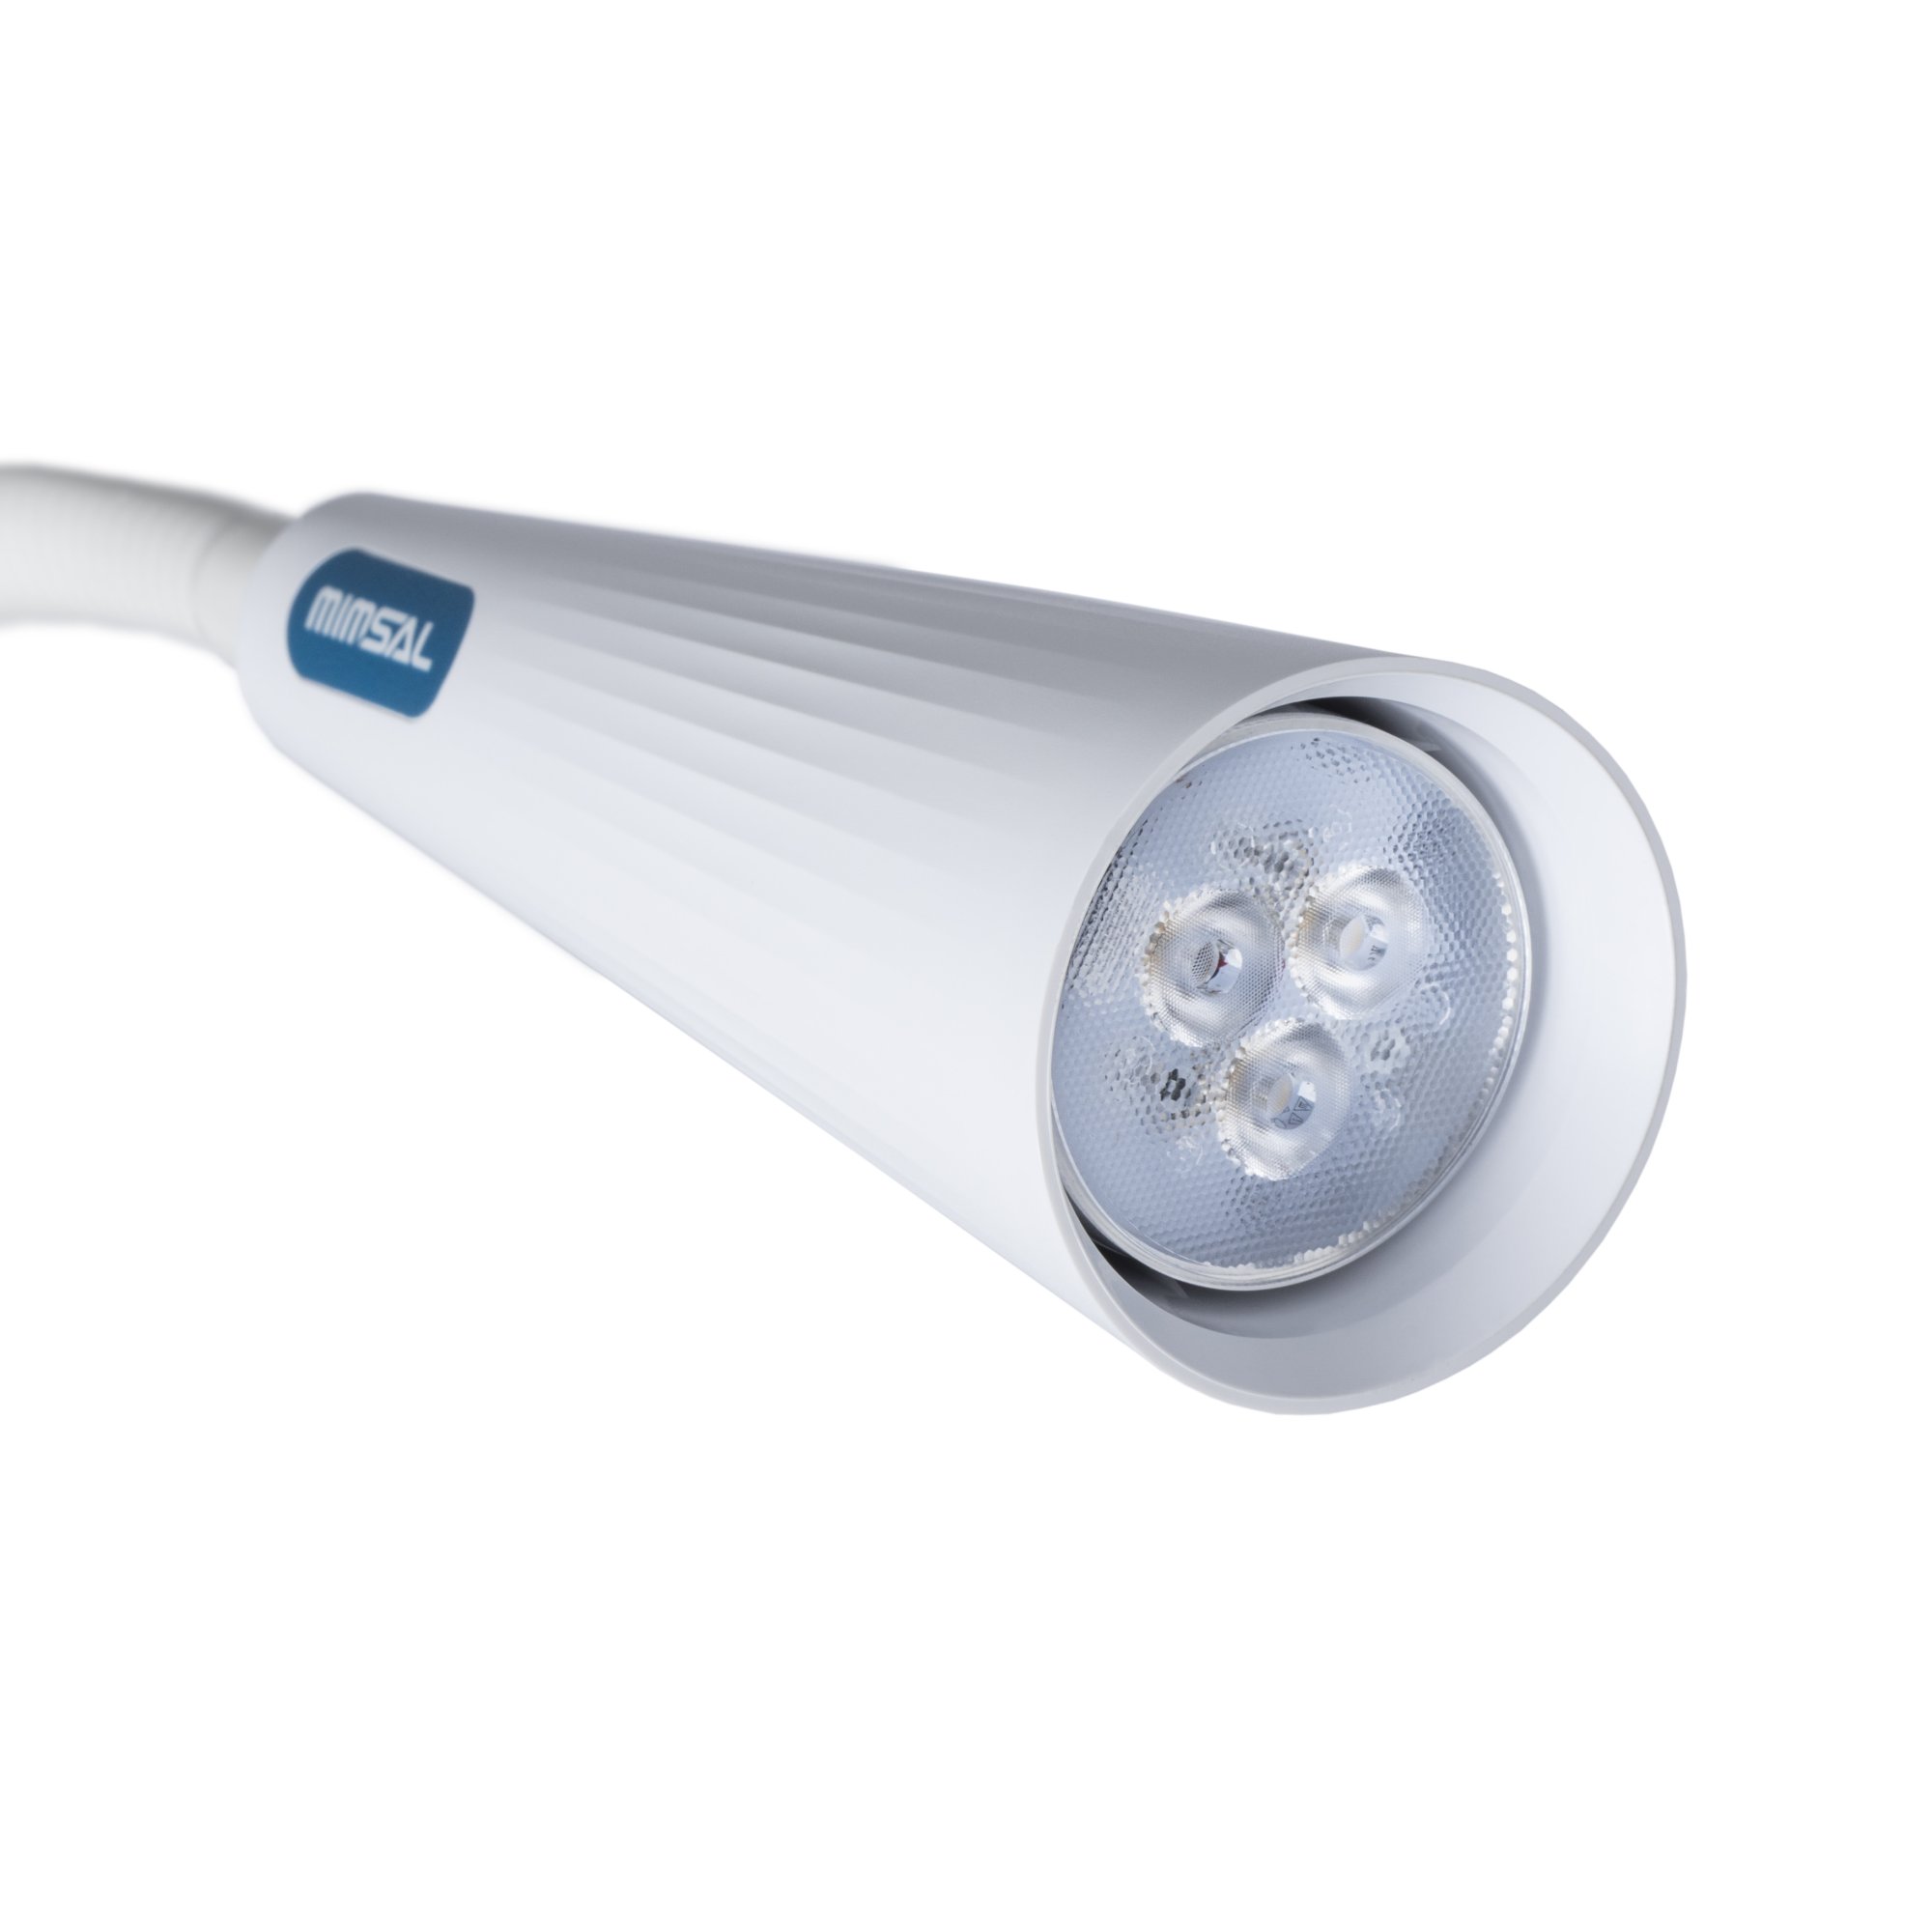 Lámpara Luxiflex LED II de exploración avanzada, 25.000 lux a 50 cm. Anclaje a raíl